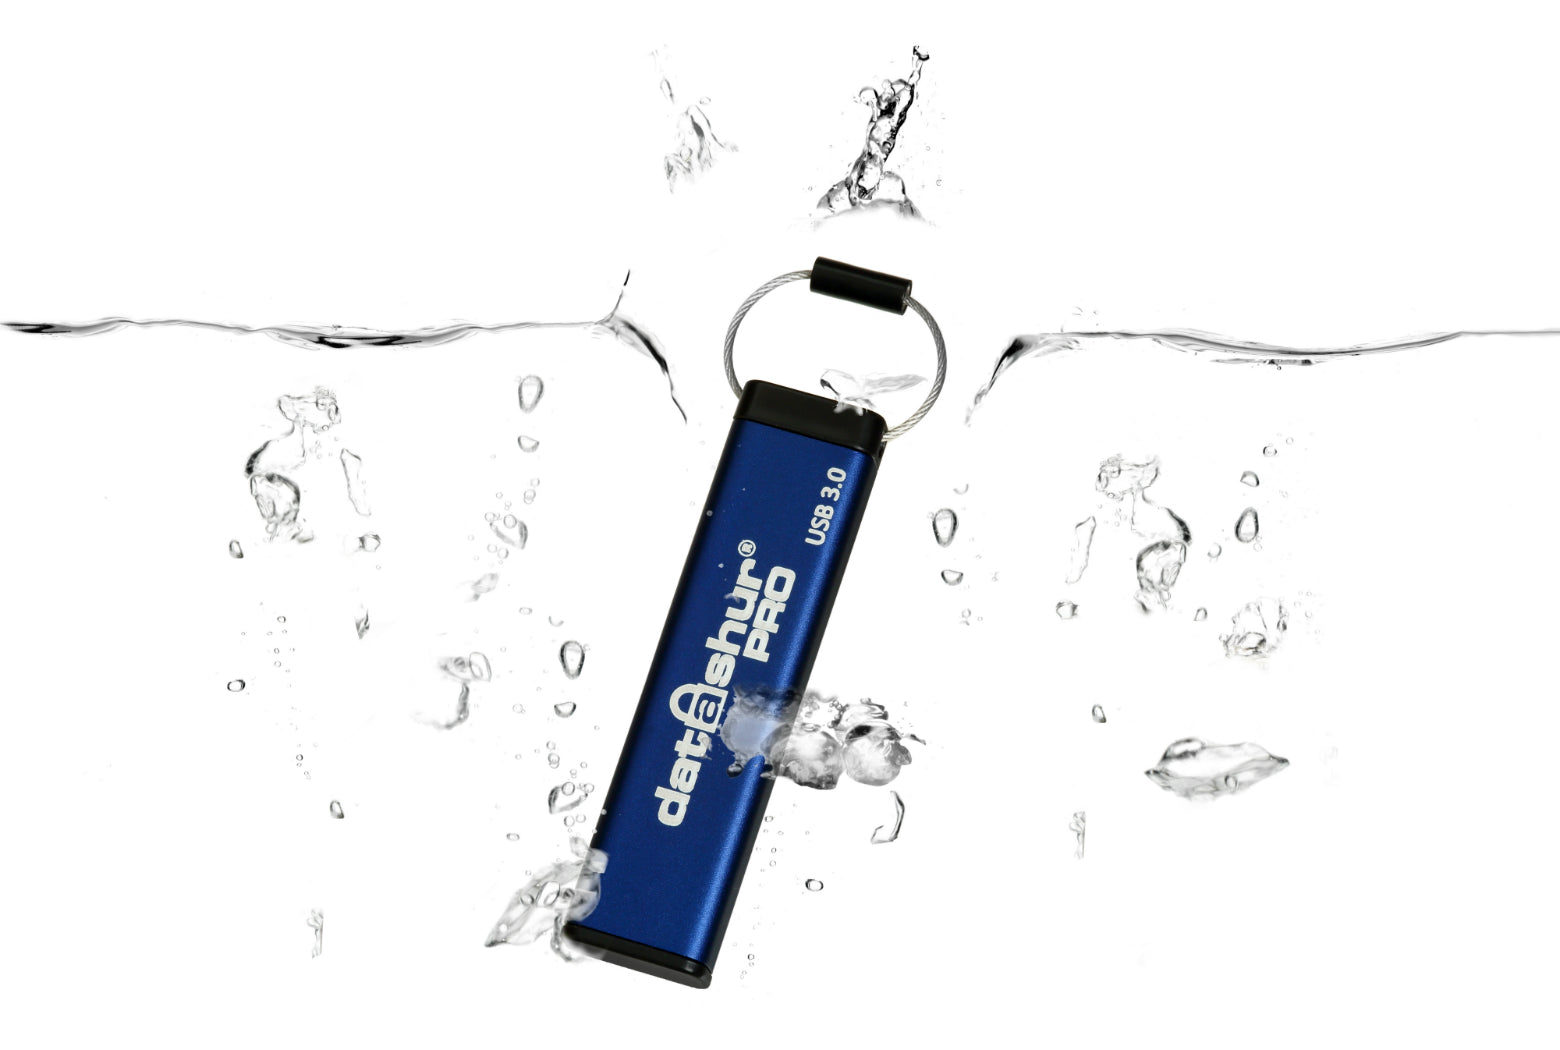 iStorage datAshur PRO USB-Stick | E-QUIPMENT